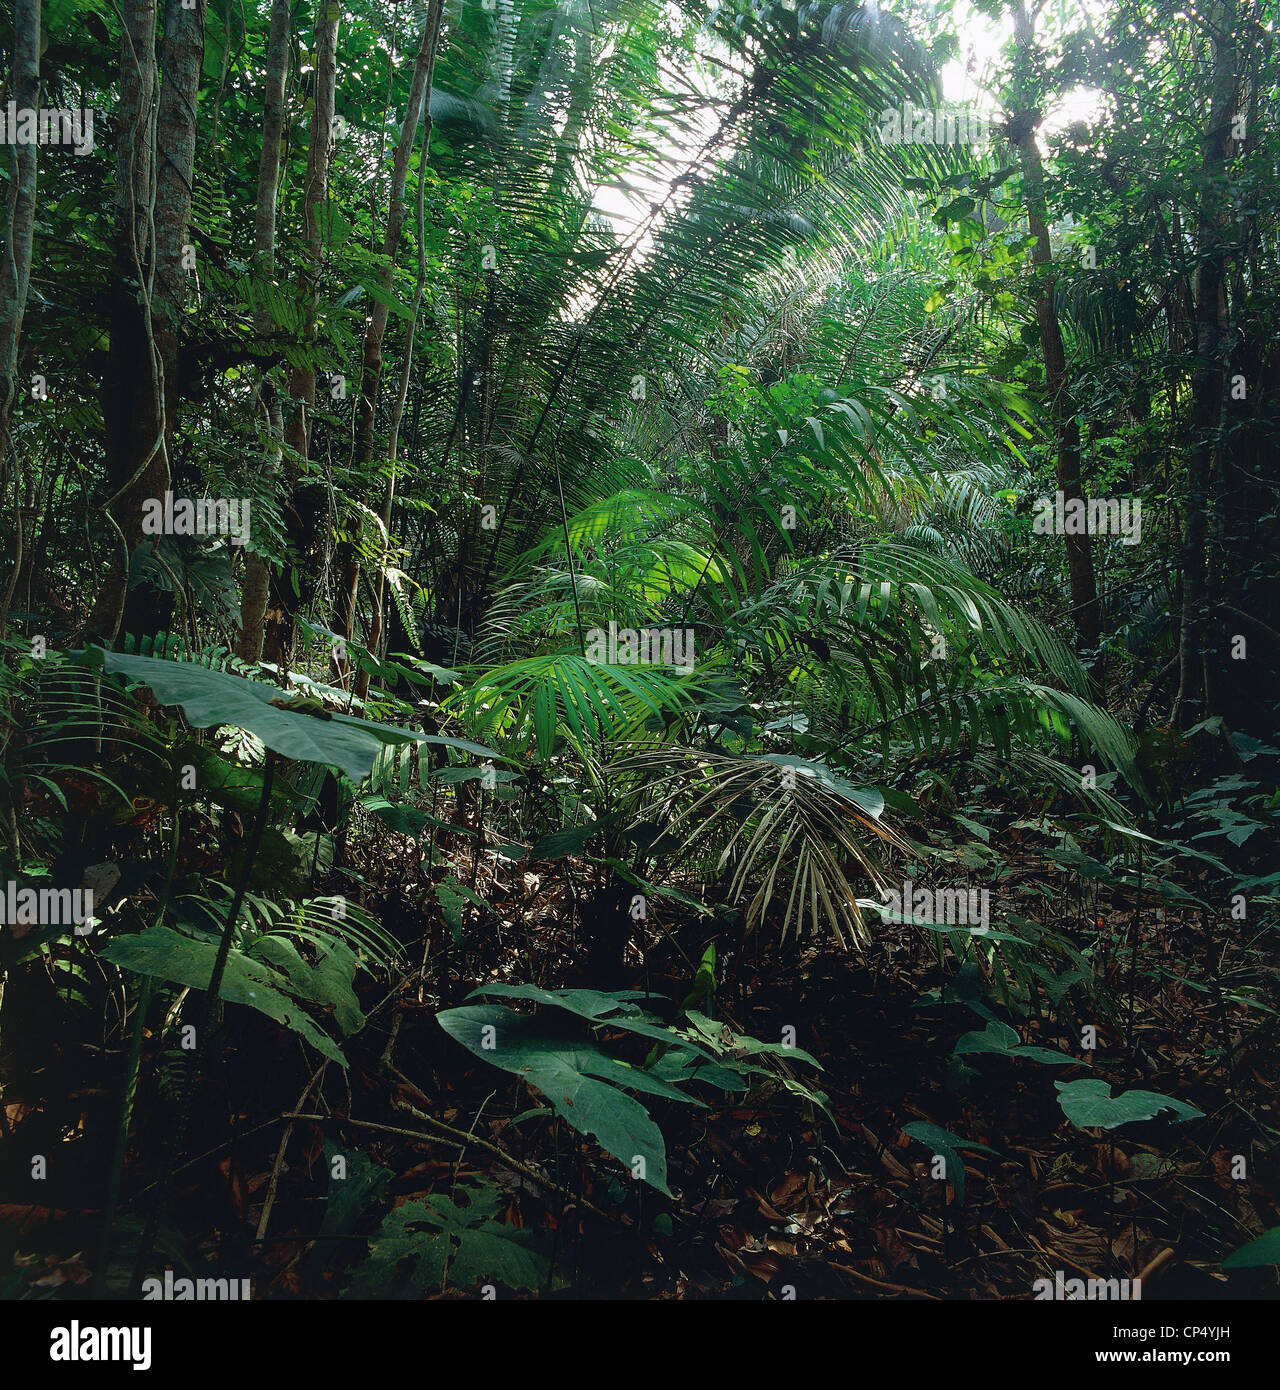 Côte d'Ivoire - Maraoue - Parc National de forêt-galerie, racines soutenir le tronc d'un arbre. Banque D'Images